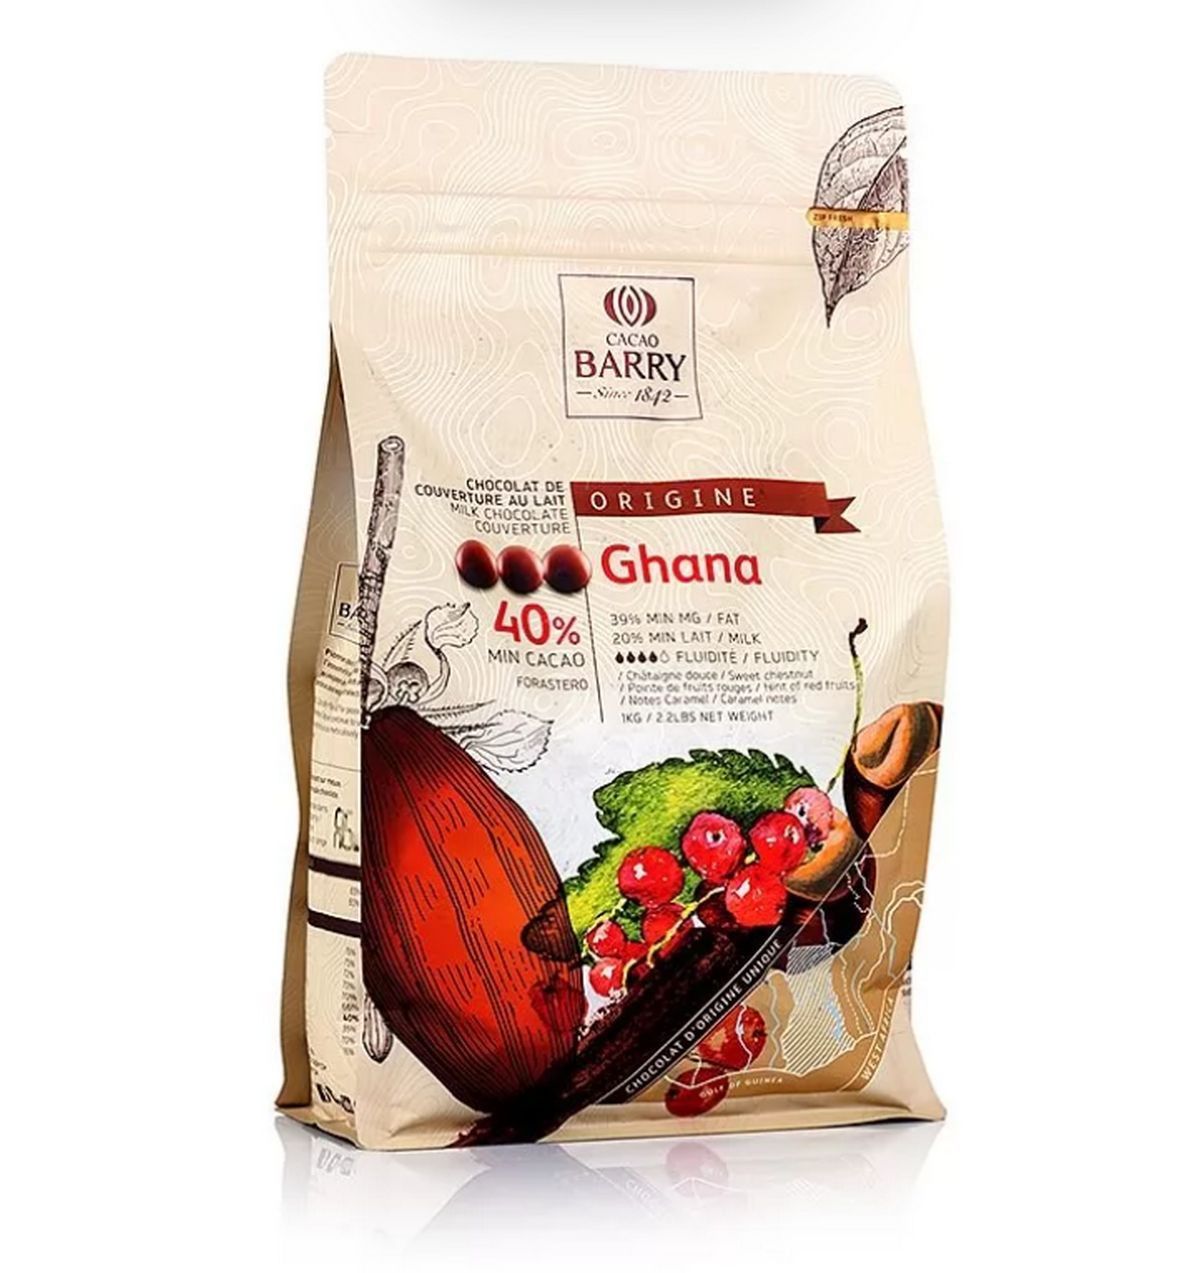 ⋗ Молочный шоколад Ghana Cacao barry 40%, 1кг купить в Украине ➛ CakeShop.com.ua, фото